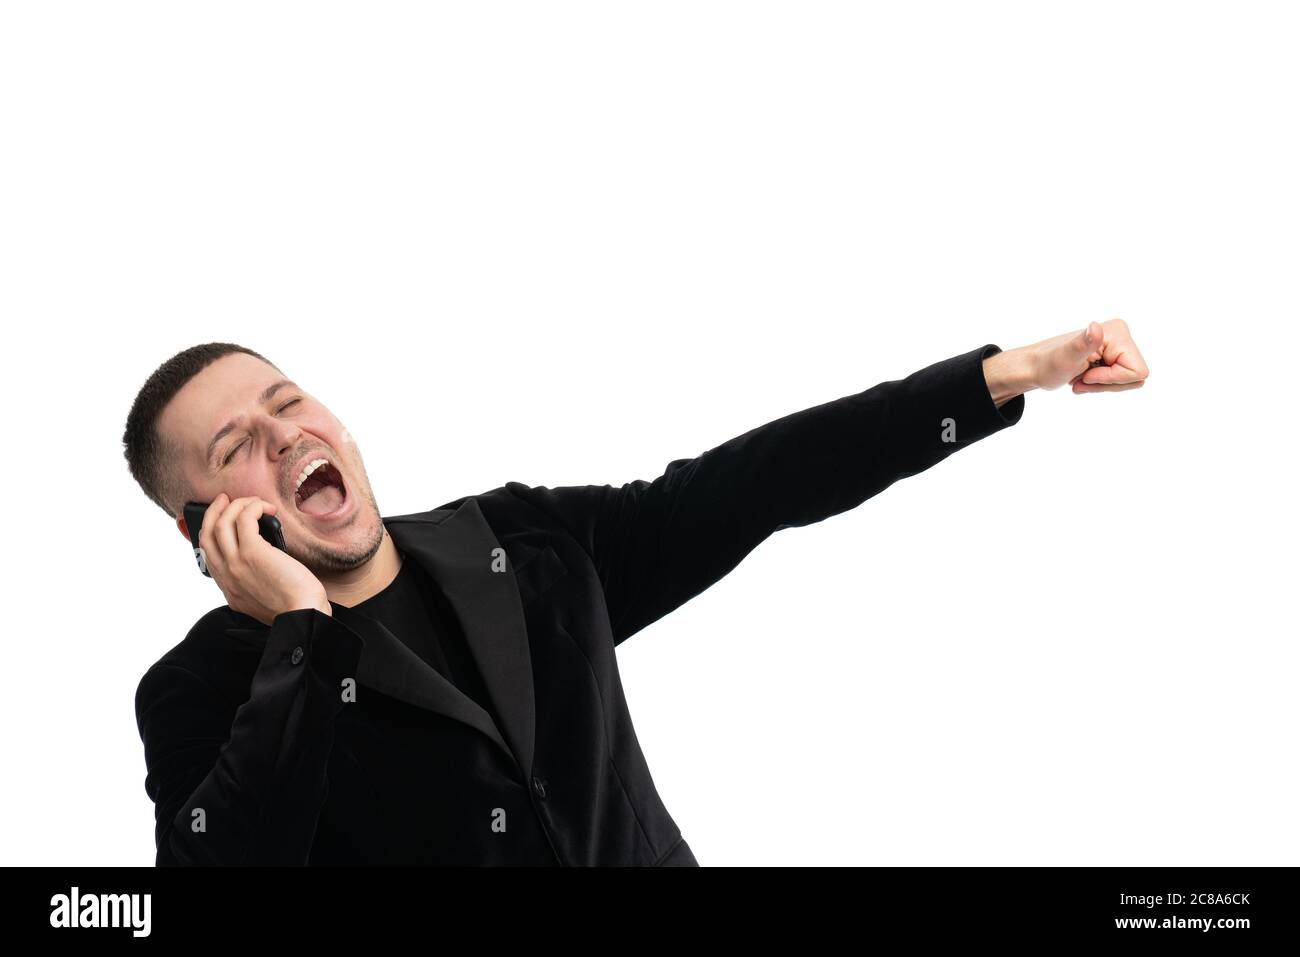 Positif confiant, joyeux jeune homme Manager en costume bleu foncé debout contre un arrière-plan isolé et gestante main tout en communiquant sur mobile Banque D'Images